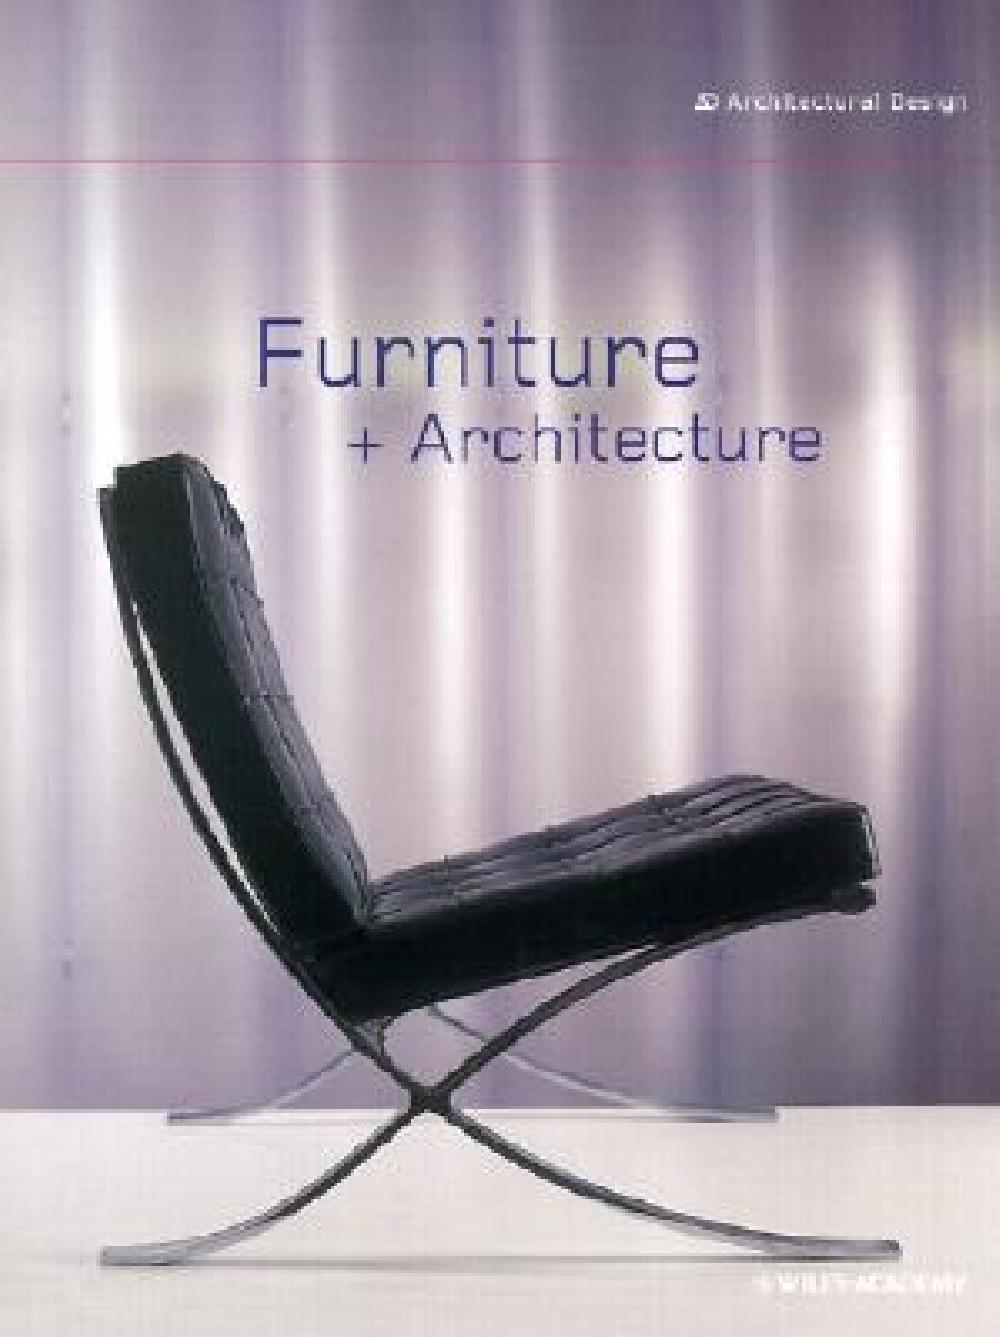 Furniture + Architecture